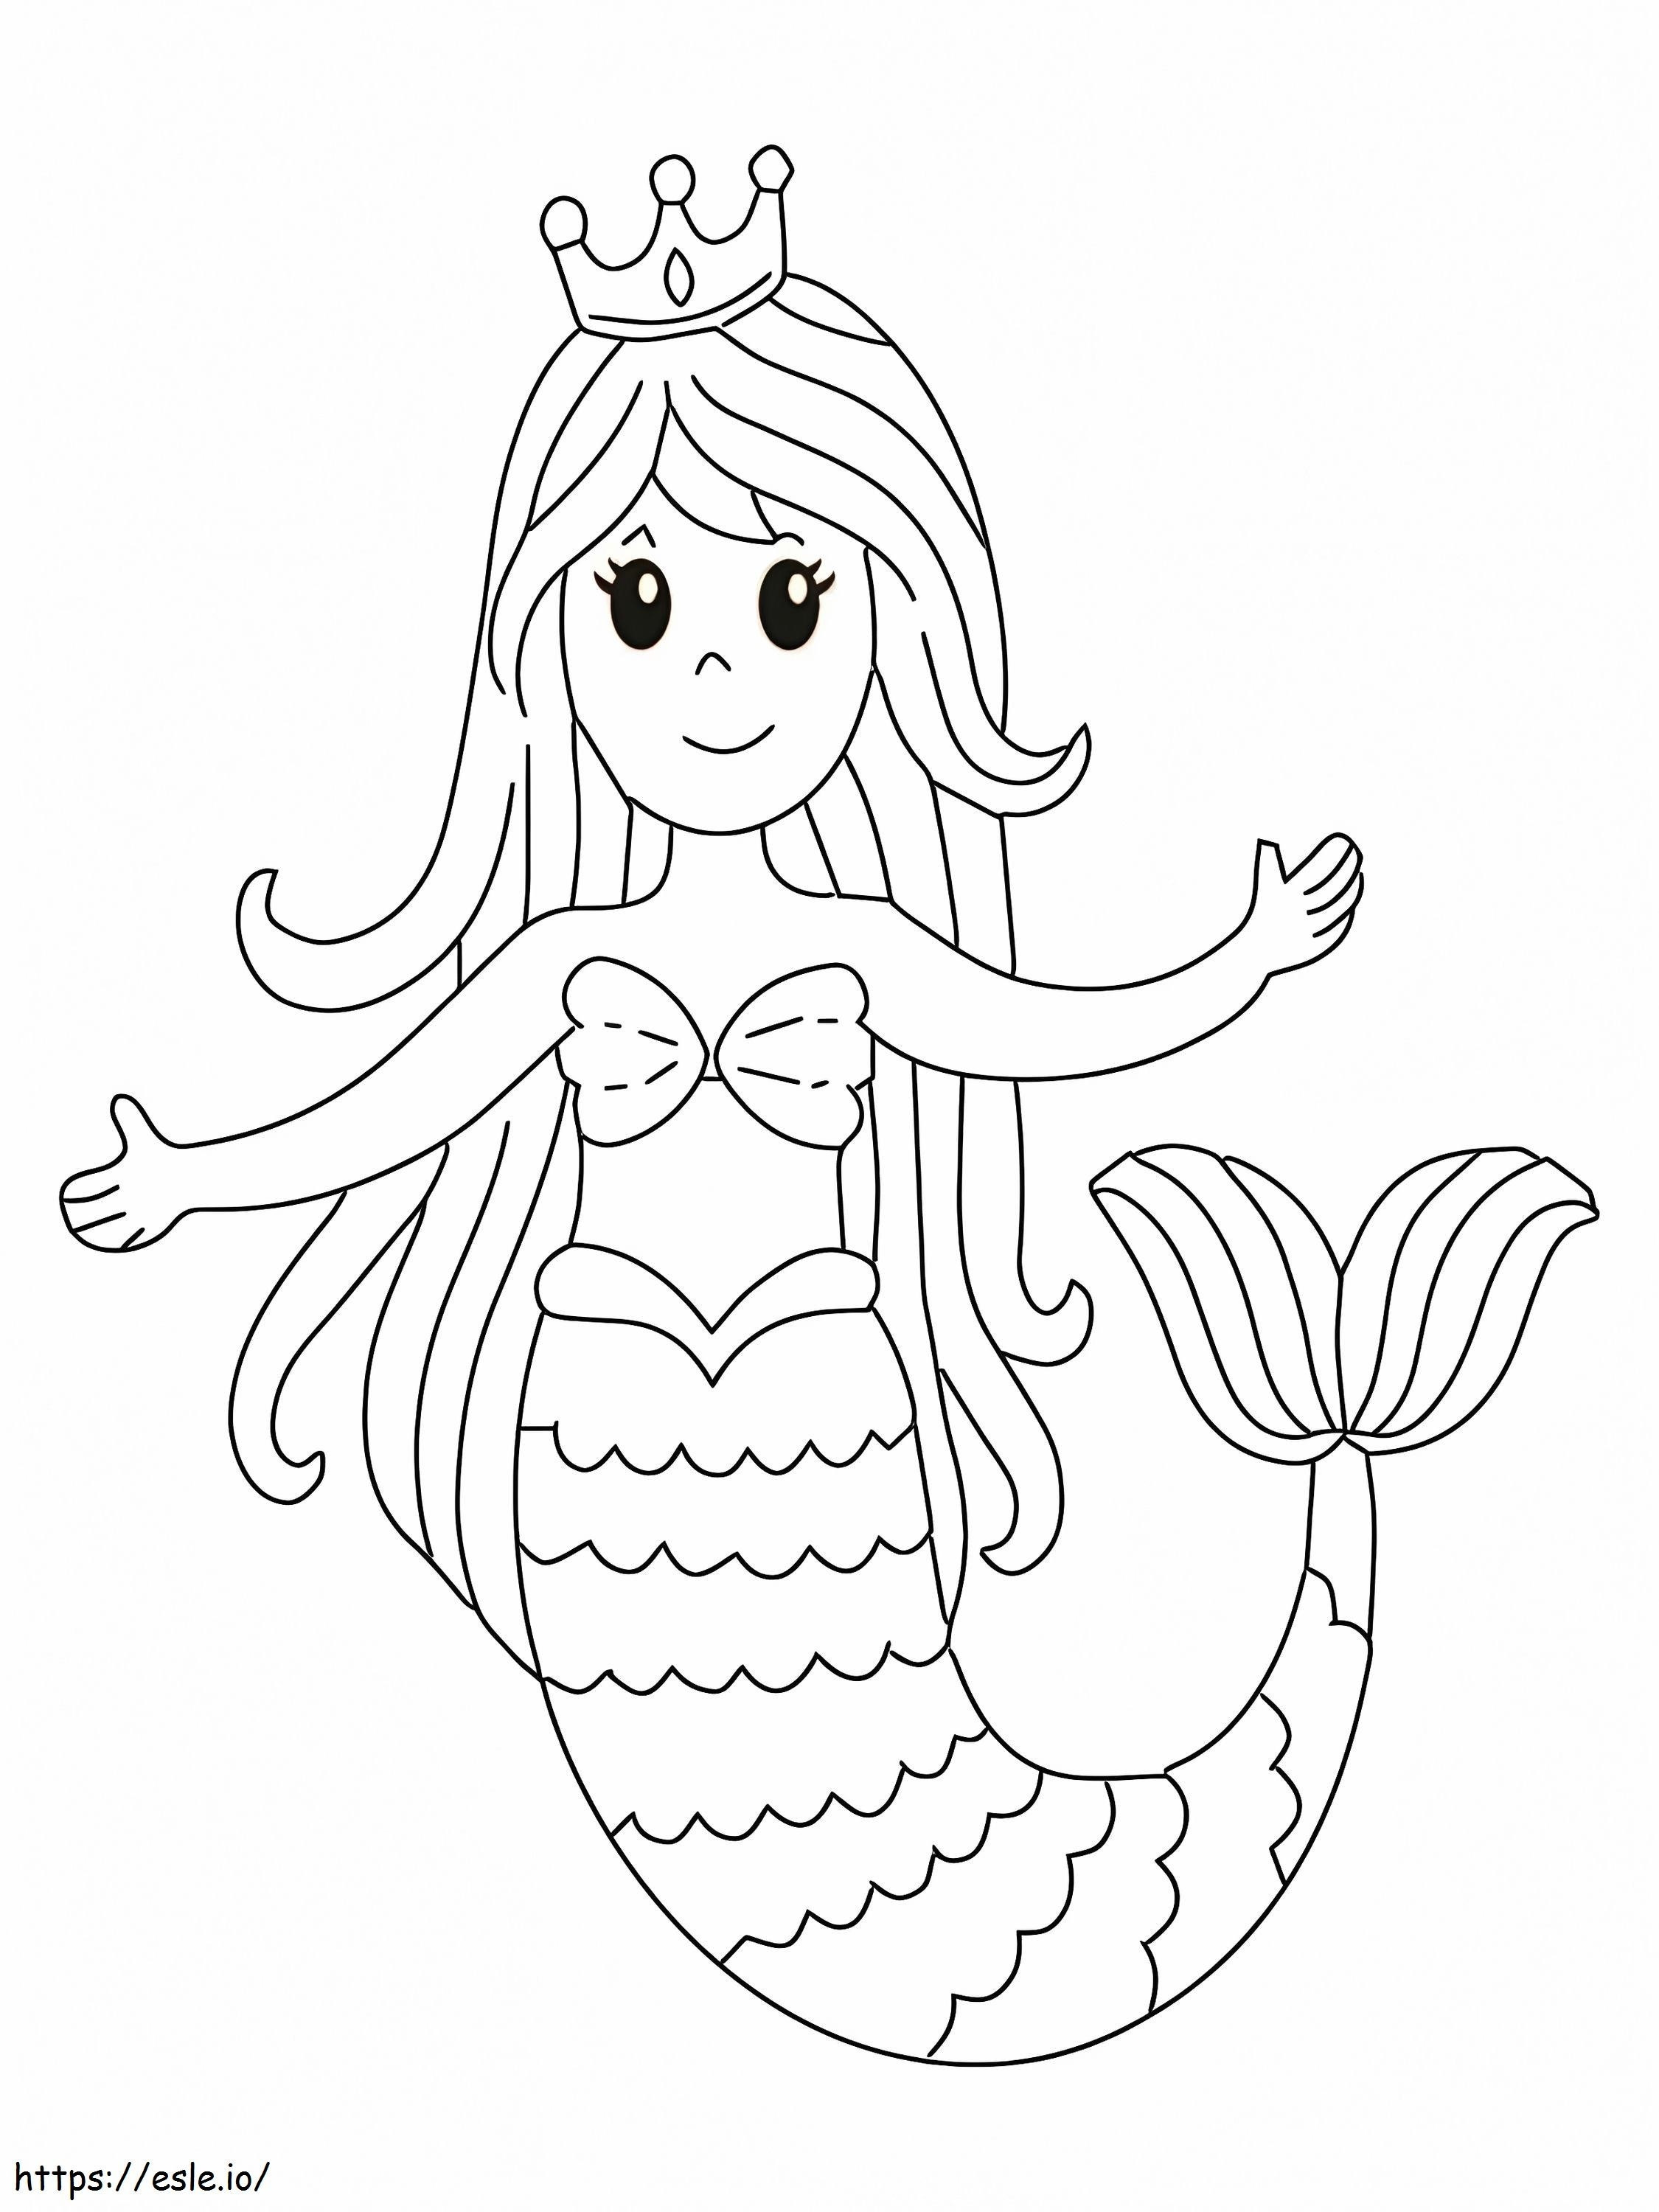 Niedliche lächelnde Meerjungfrau ausmalbilder